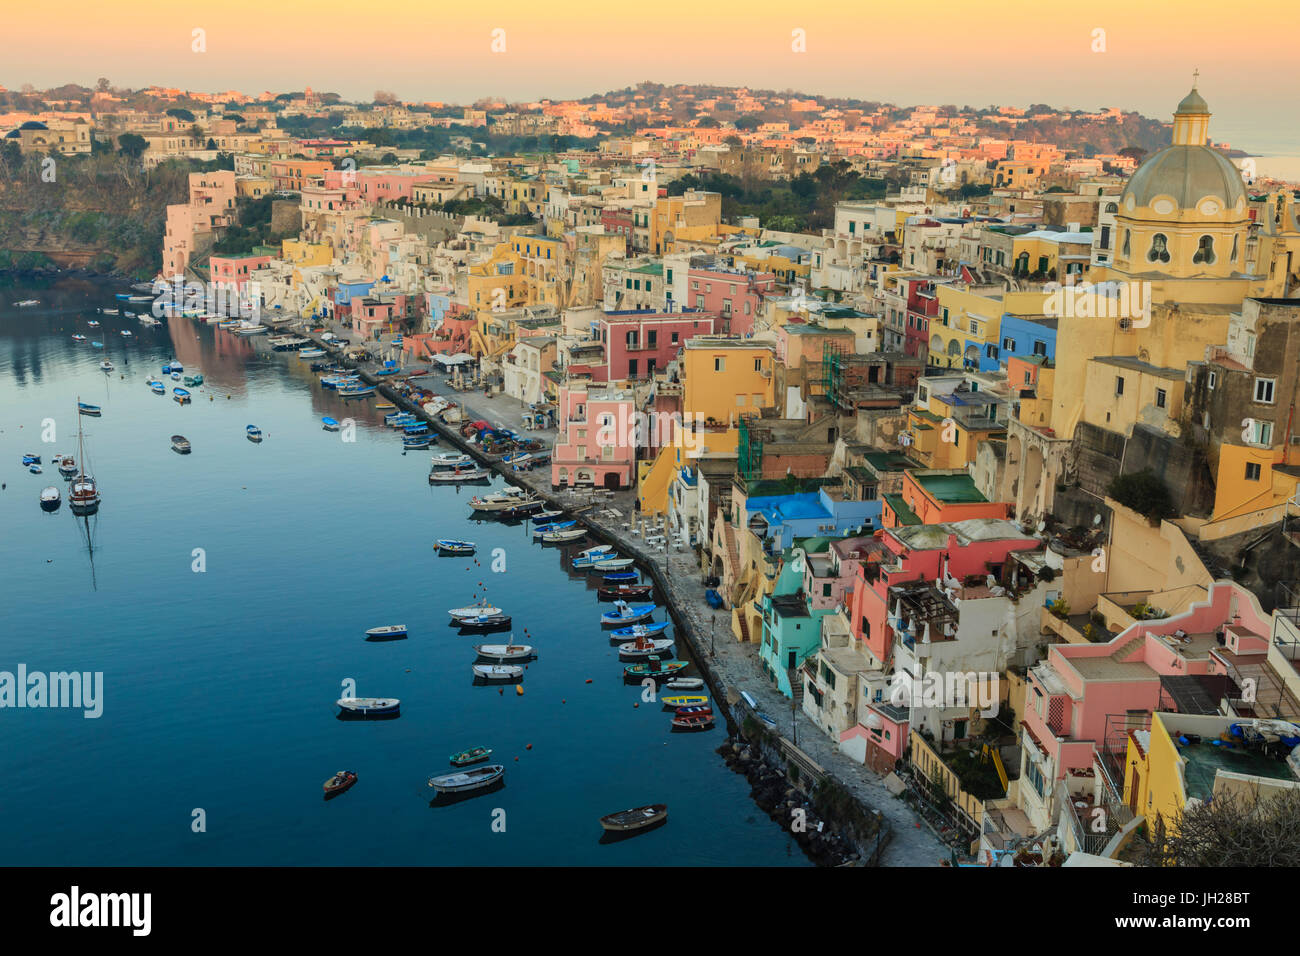 Marina Corricella al amanecer, pueblo pesquero, coloridas casas, la iglesia y el puerto de barcos, Procida Island, la Bahía de Nápoles, Italia Foto de stock